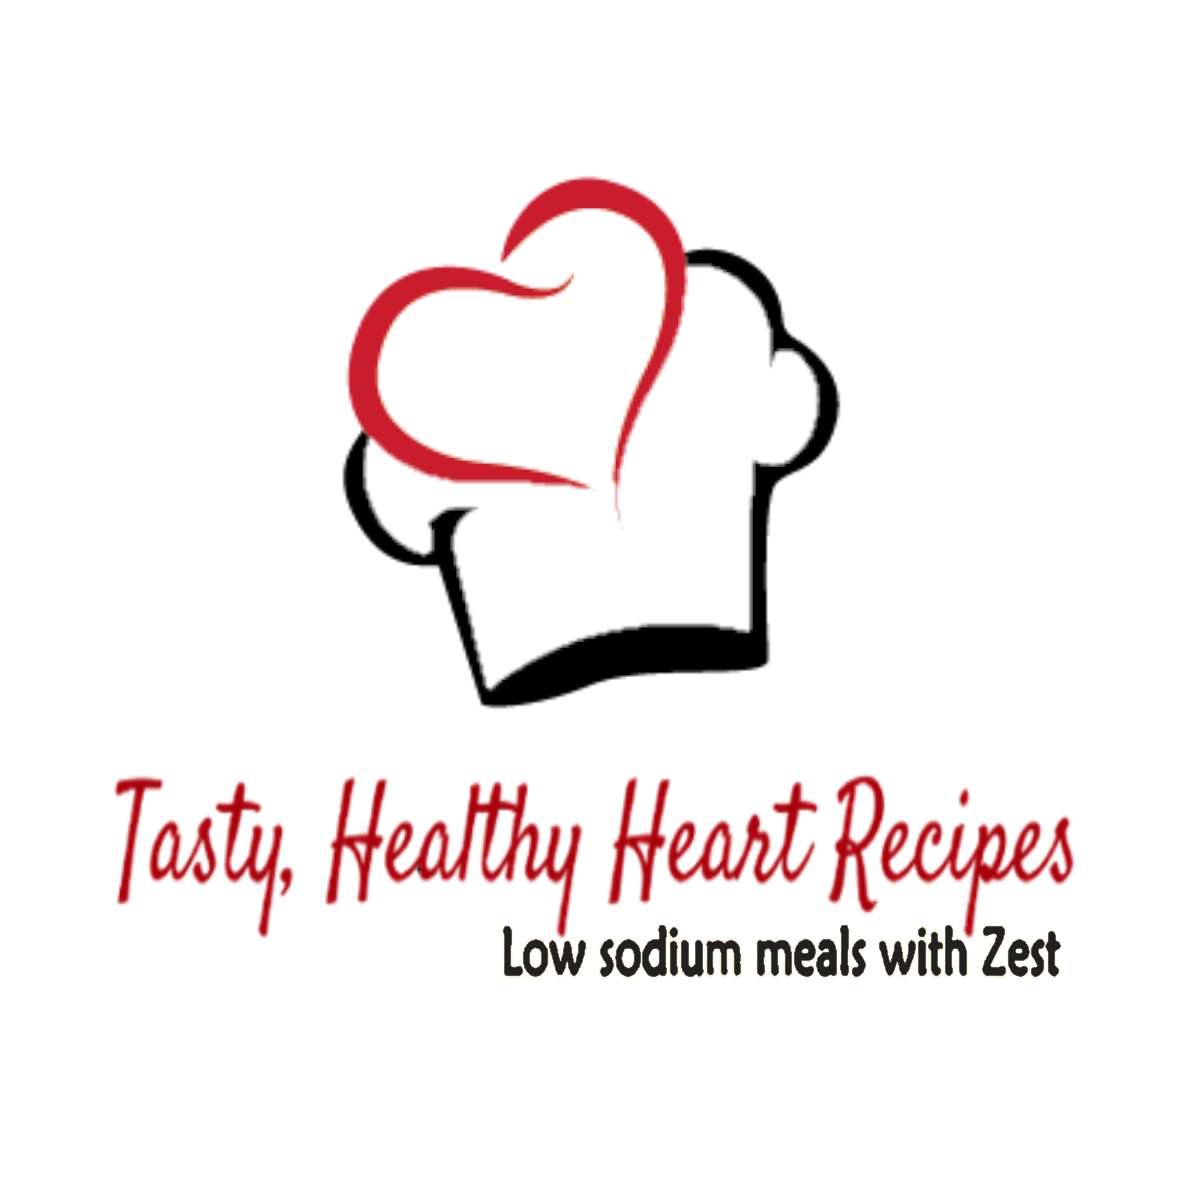 Tasty healthy heart low sodium recipes logo large